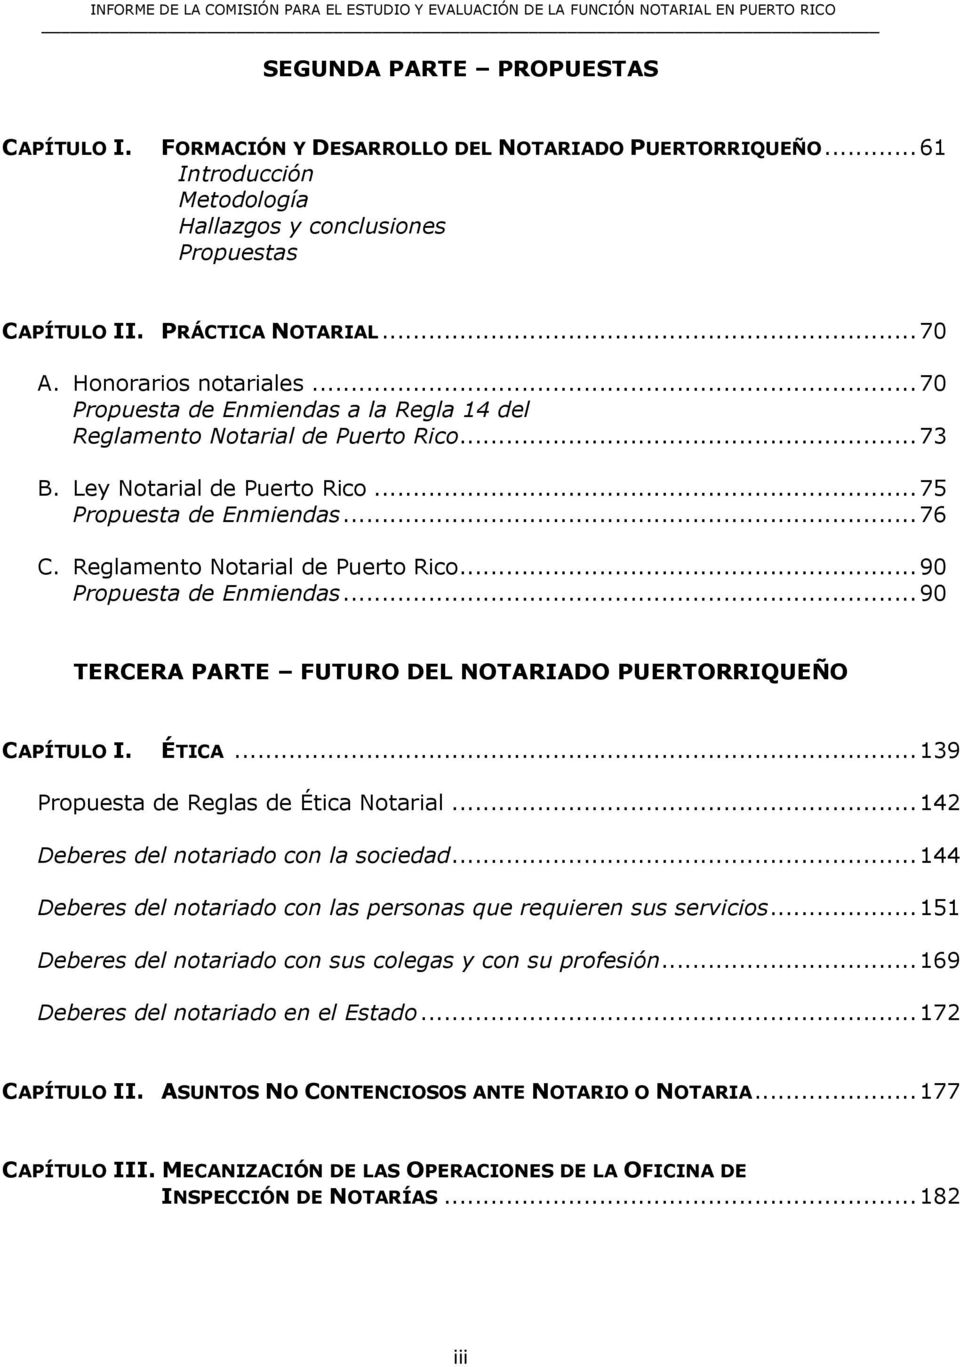 Reglamento Notarial de Puerto Rico... 90 Propuesta de Enmiendas... 90 TERCERA PARTE FUTURO DEL NOTARIADO PUERTORRIQUEÑO CAPÍTULO I. ÉTICA... 139 Propuesta de Reglas de Ética Notarial.